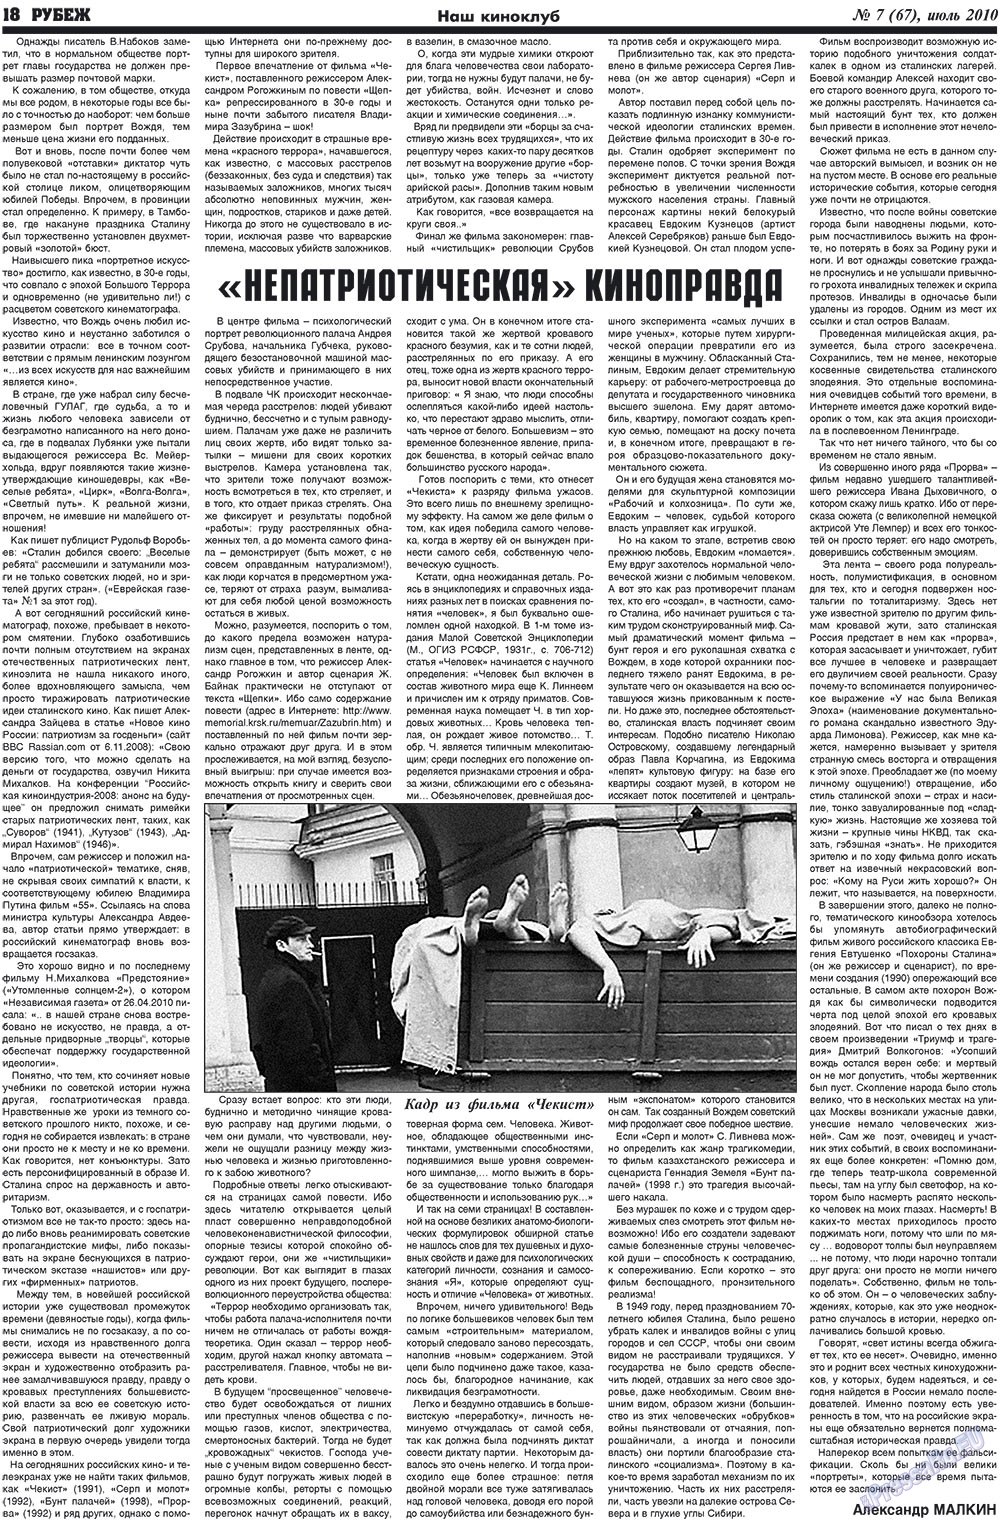 Рубеж (газета). 2010 год, номер 7, стр. 18